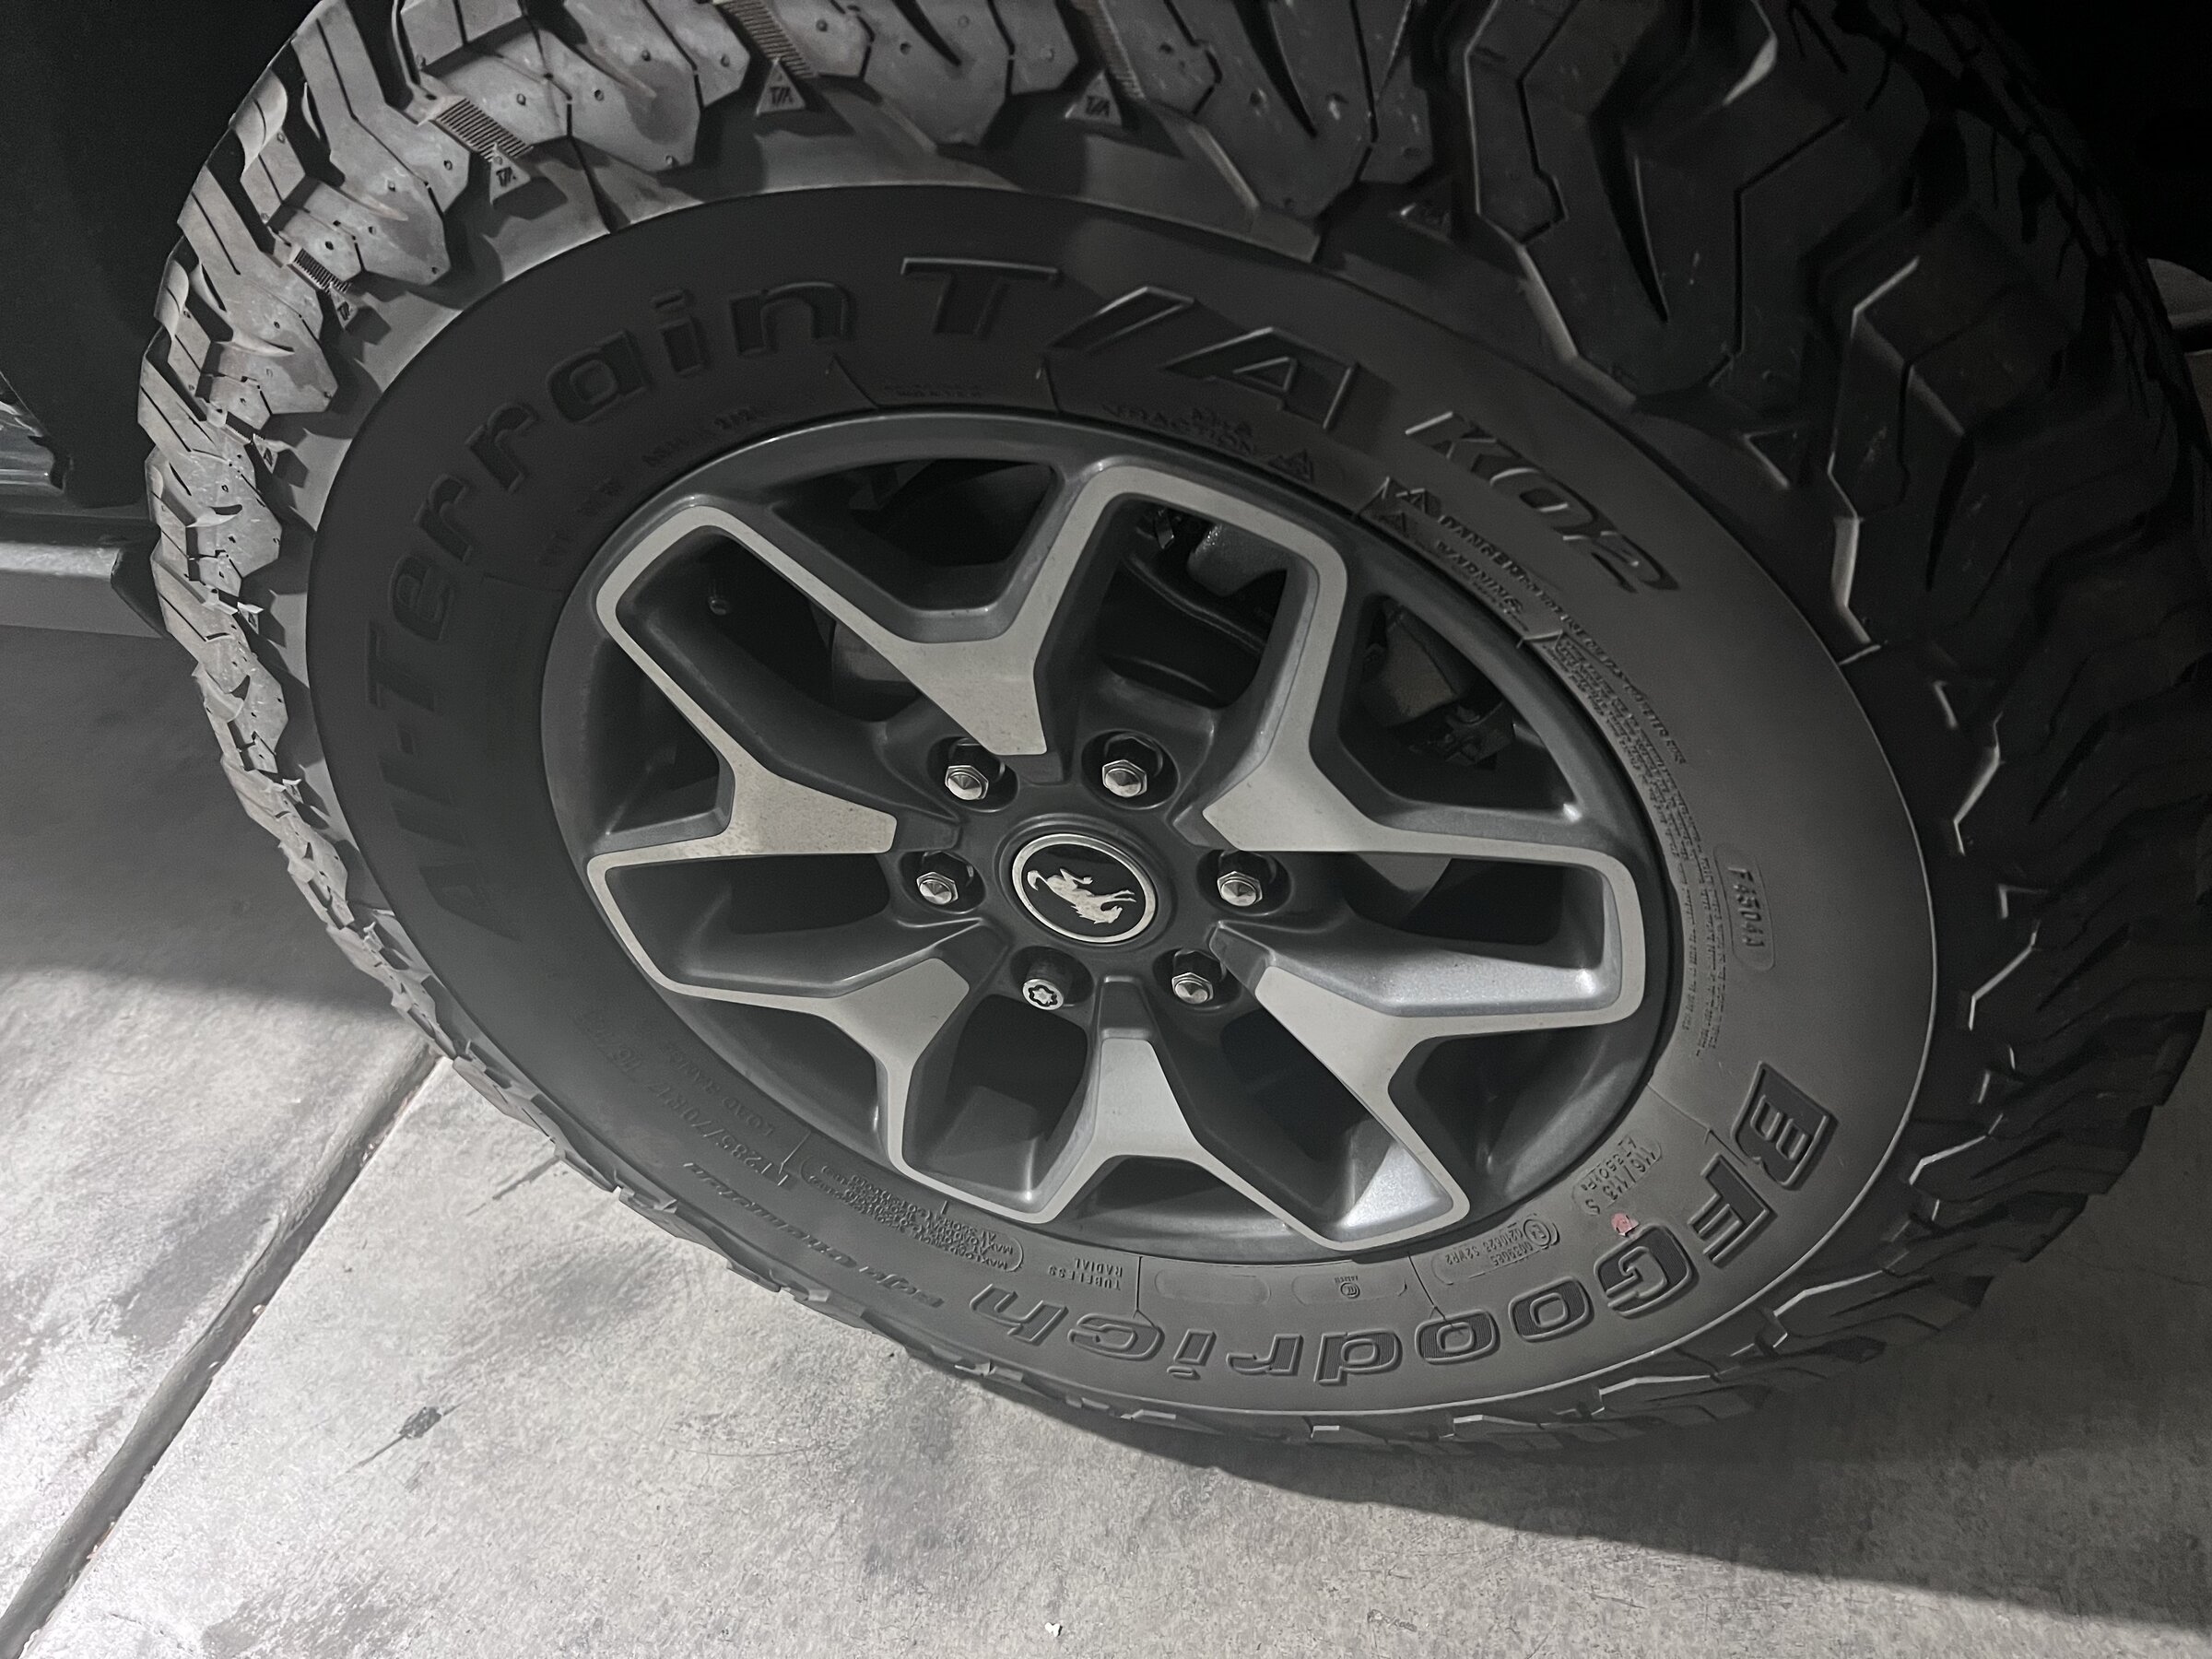 Ford Bronco Badlands wheels $200 66F43E24-7A7C-4194-B82C-F9995A498161